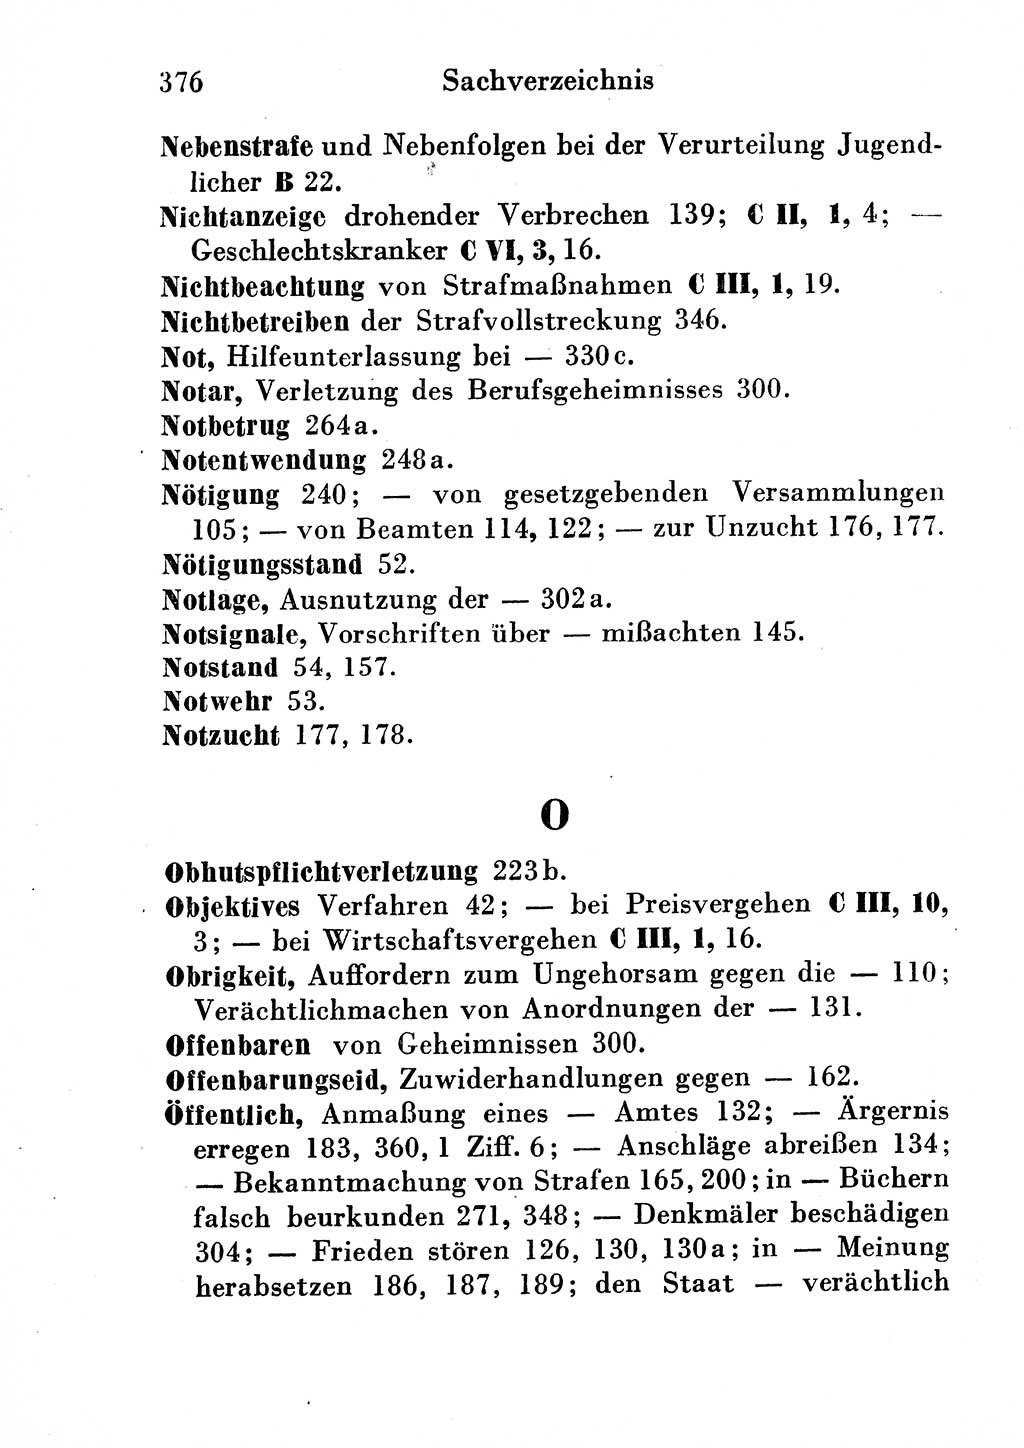 Strafgesetzbuch (StGB) und andere Strafgesetze [Deutsche Demokratische Republik (DDR)] 1954, Seite 376 (StGB Strafges. DDR 1954, S. 376)